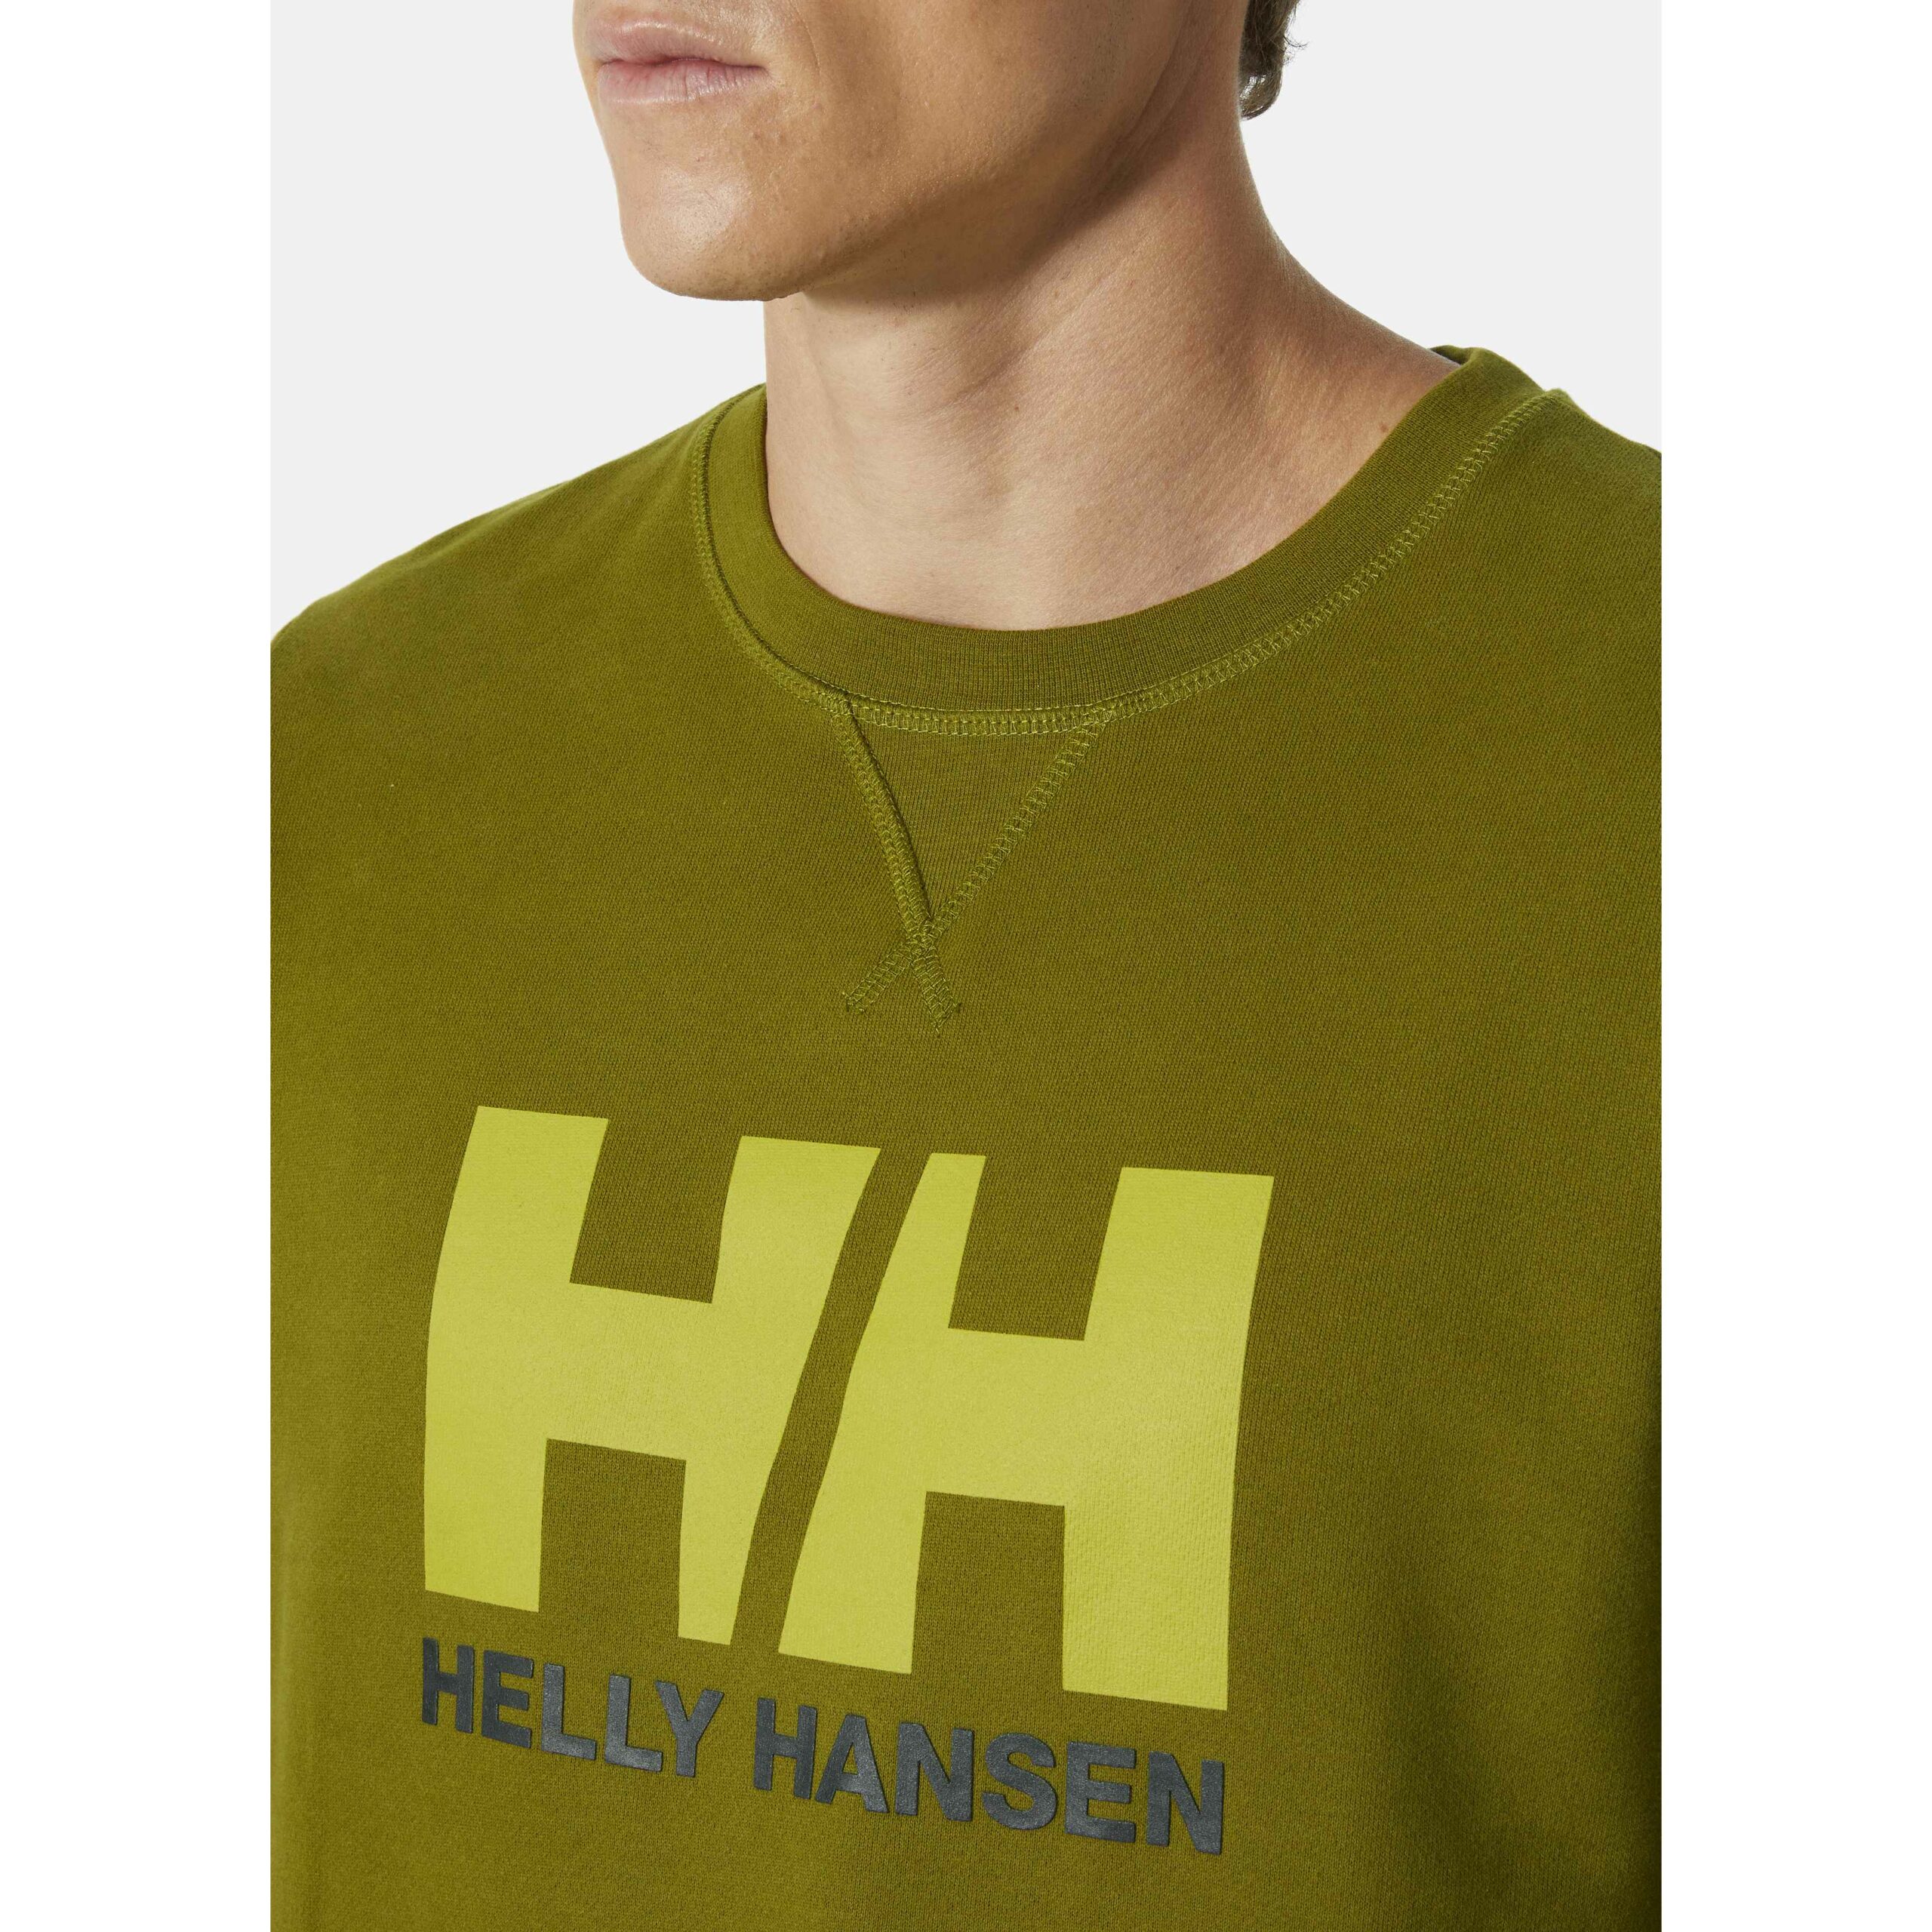 Helly-Hansen 34000 Hh - Suéter de cuello redondo para hombre